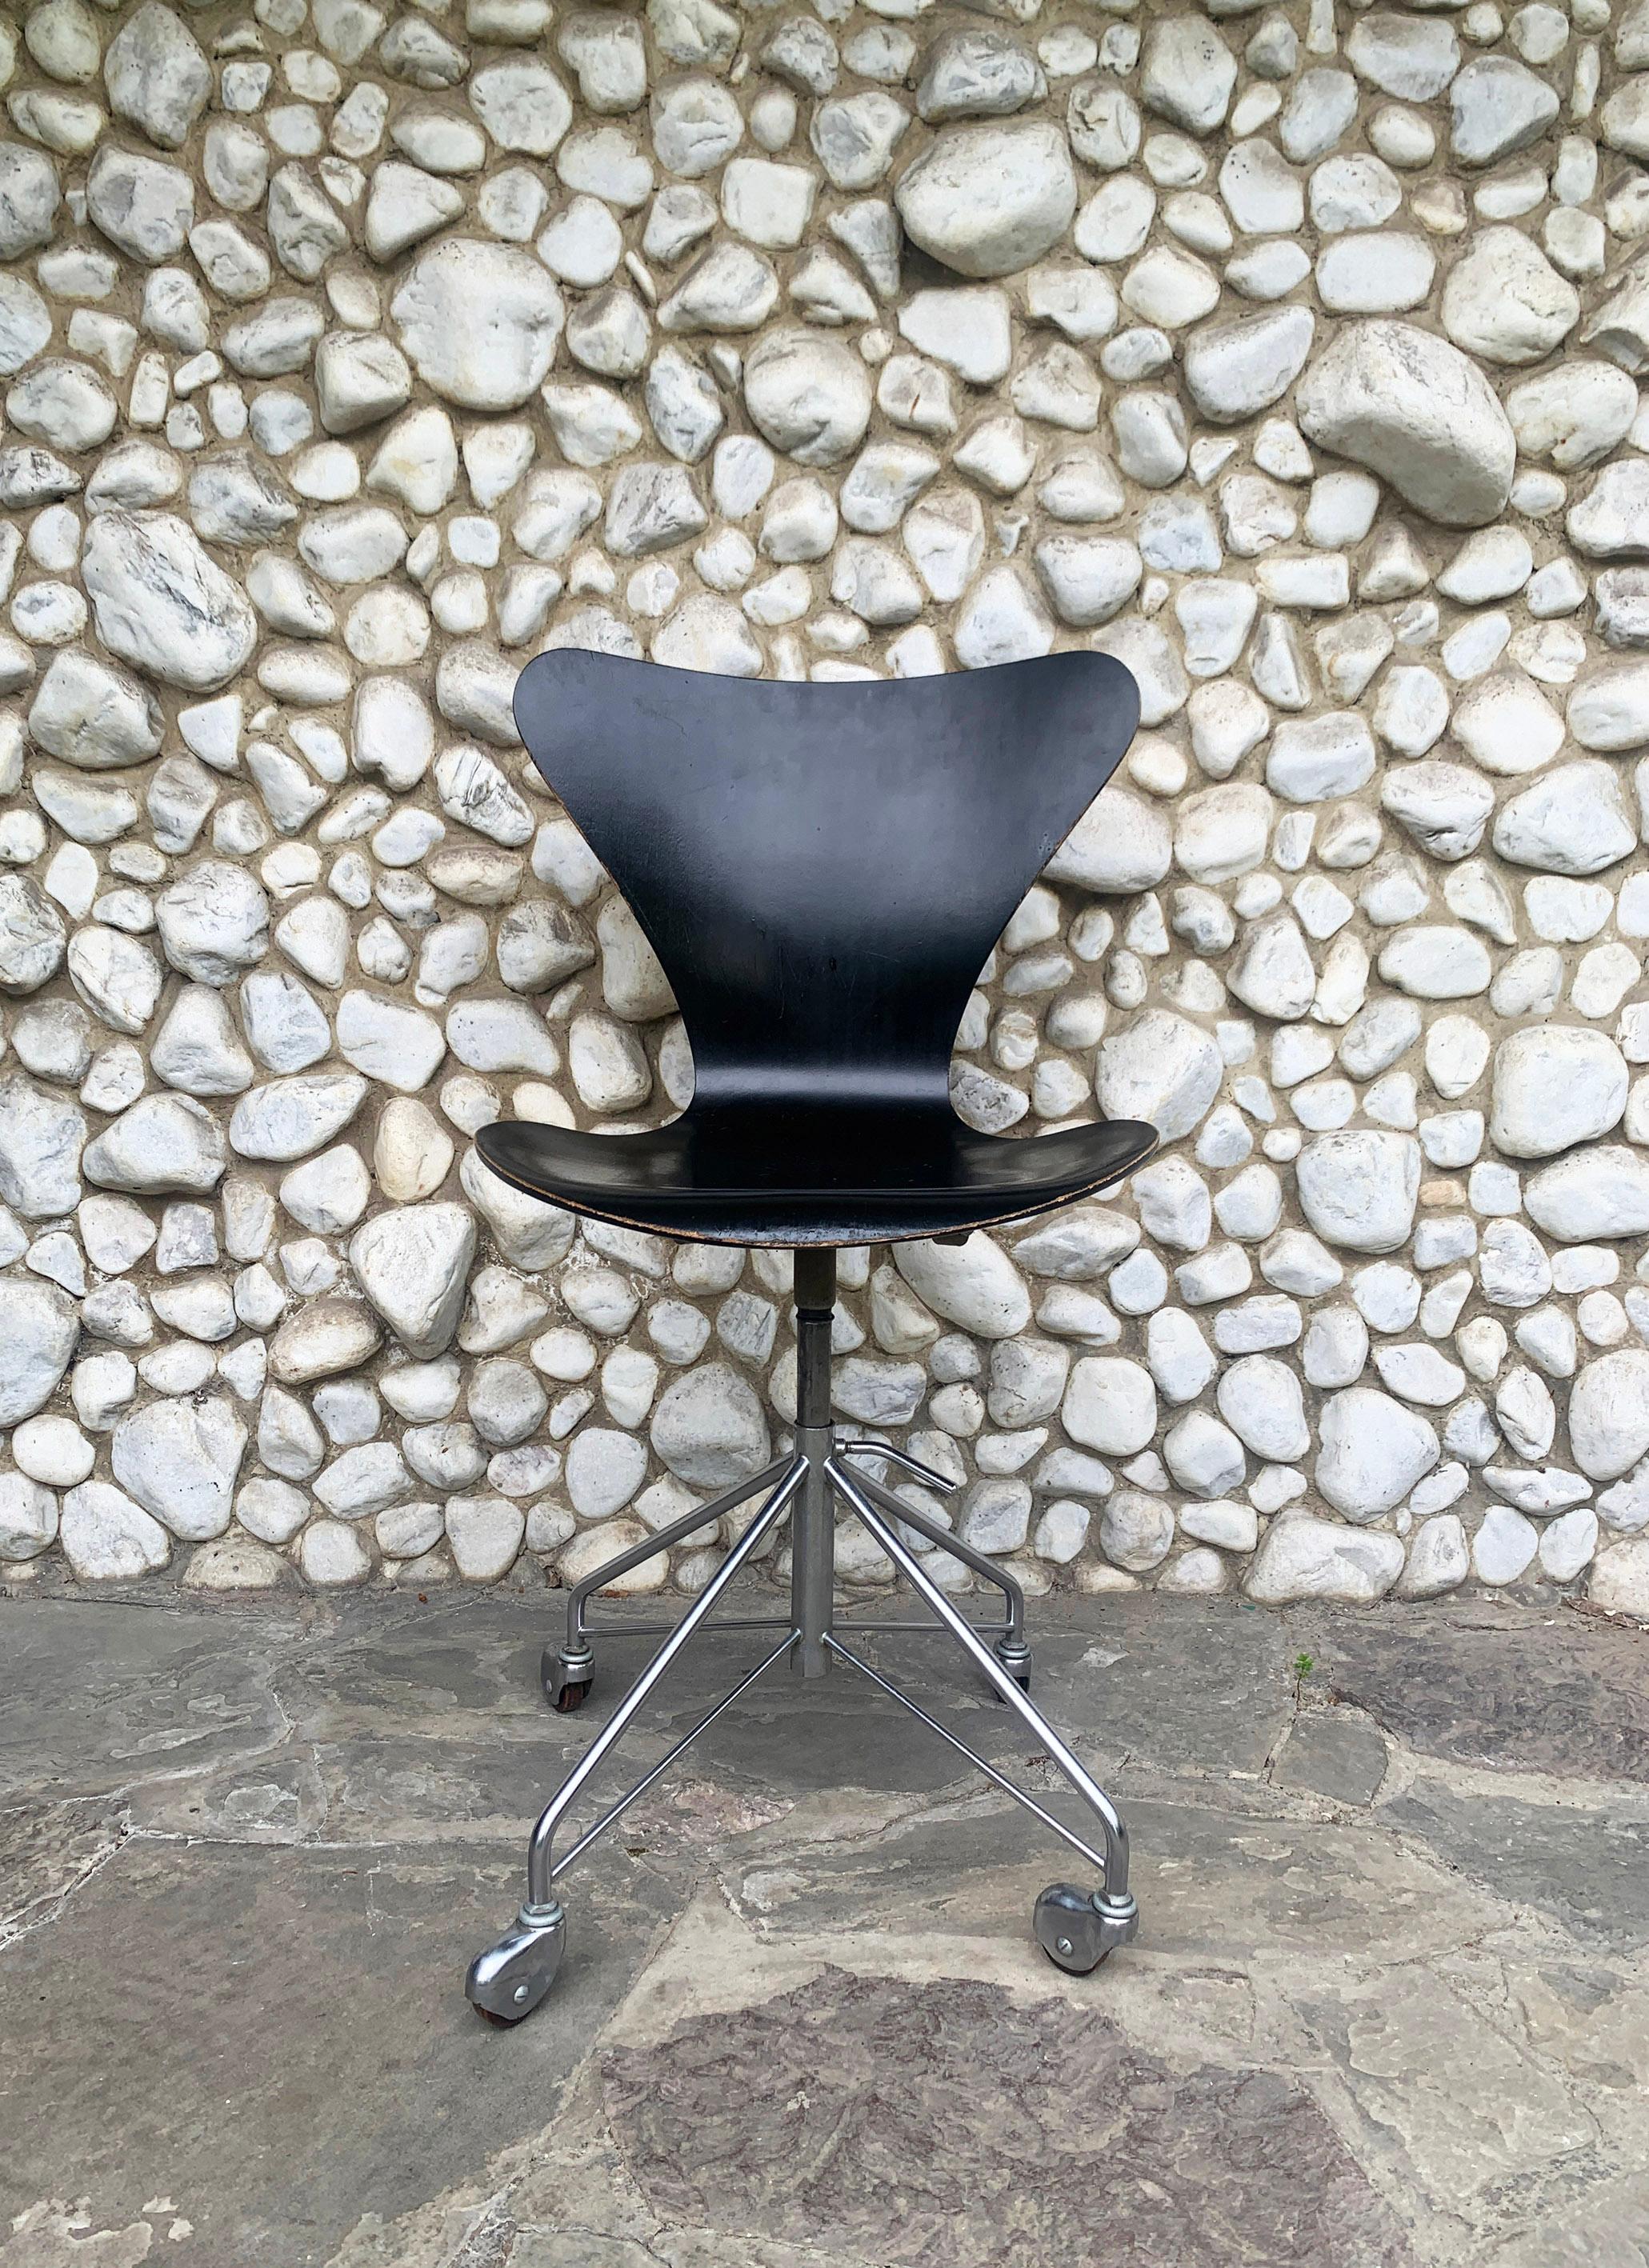 Fauteuil pivotant modèle 3117 en contreplaqué noir. Basée sur la chaise 3107 conçue par Arne Jacobsen en 1955. 

Produit par Fritz Hansen, Danemark, en janvier 1965. 

Hauteur d'assise réglable de 44 à 54 cm. 

Siège en contreplaqué, peint en noir